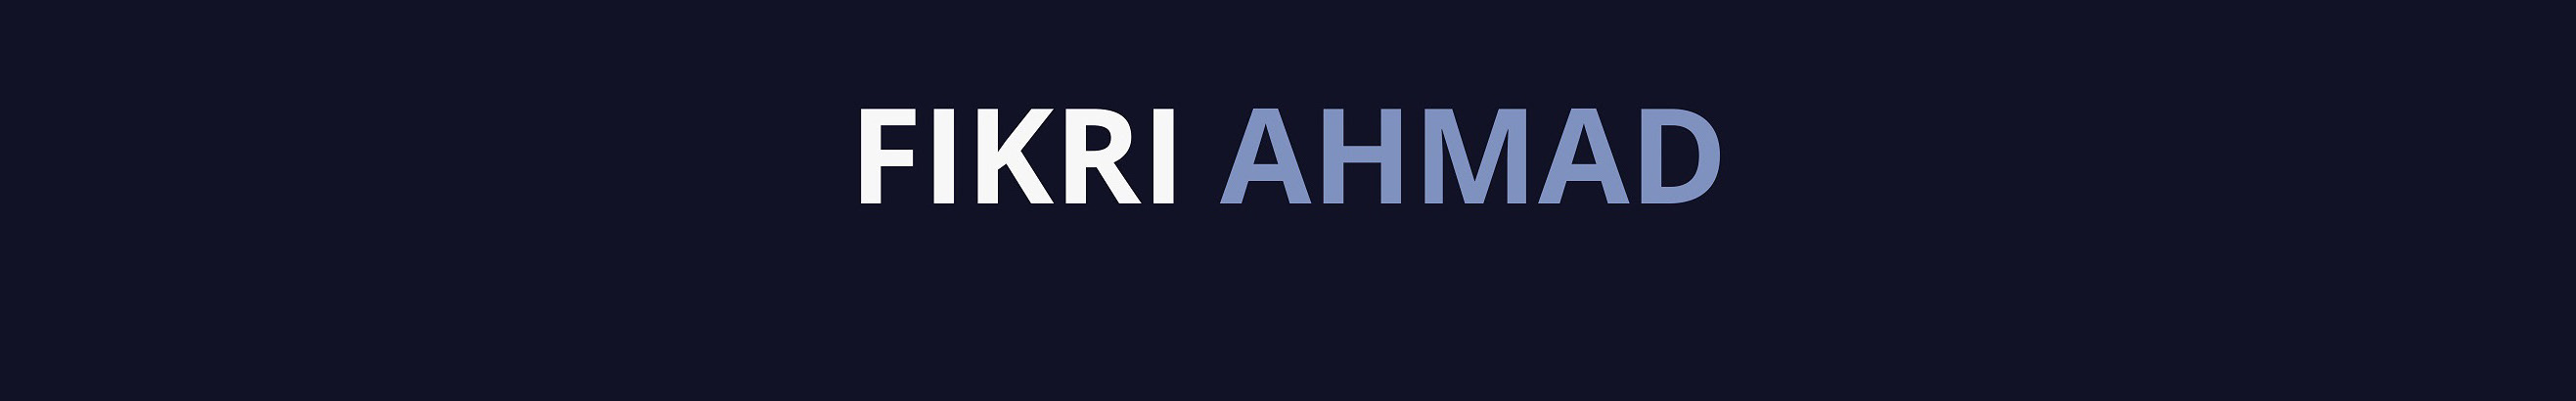 Fikri Ahmad's profile banner